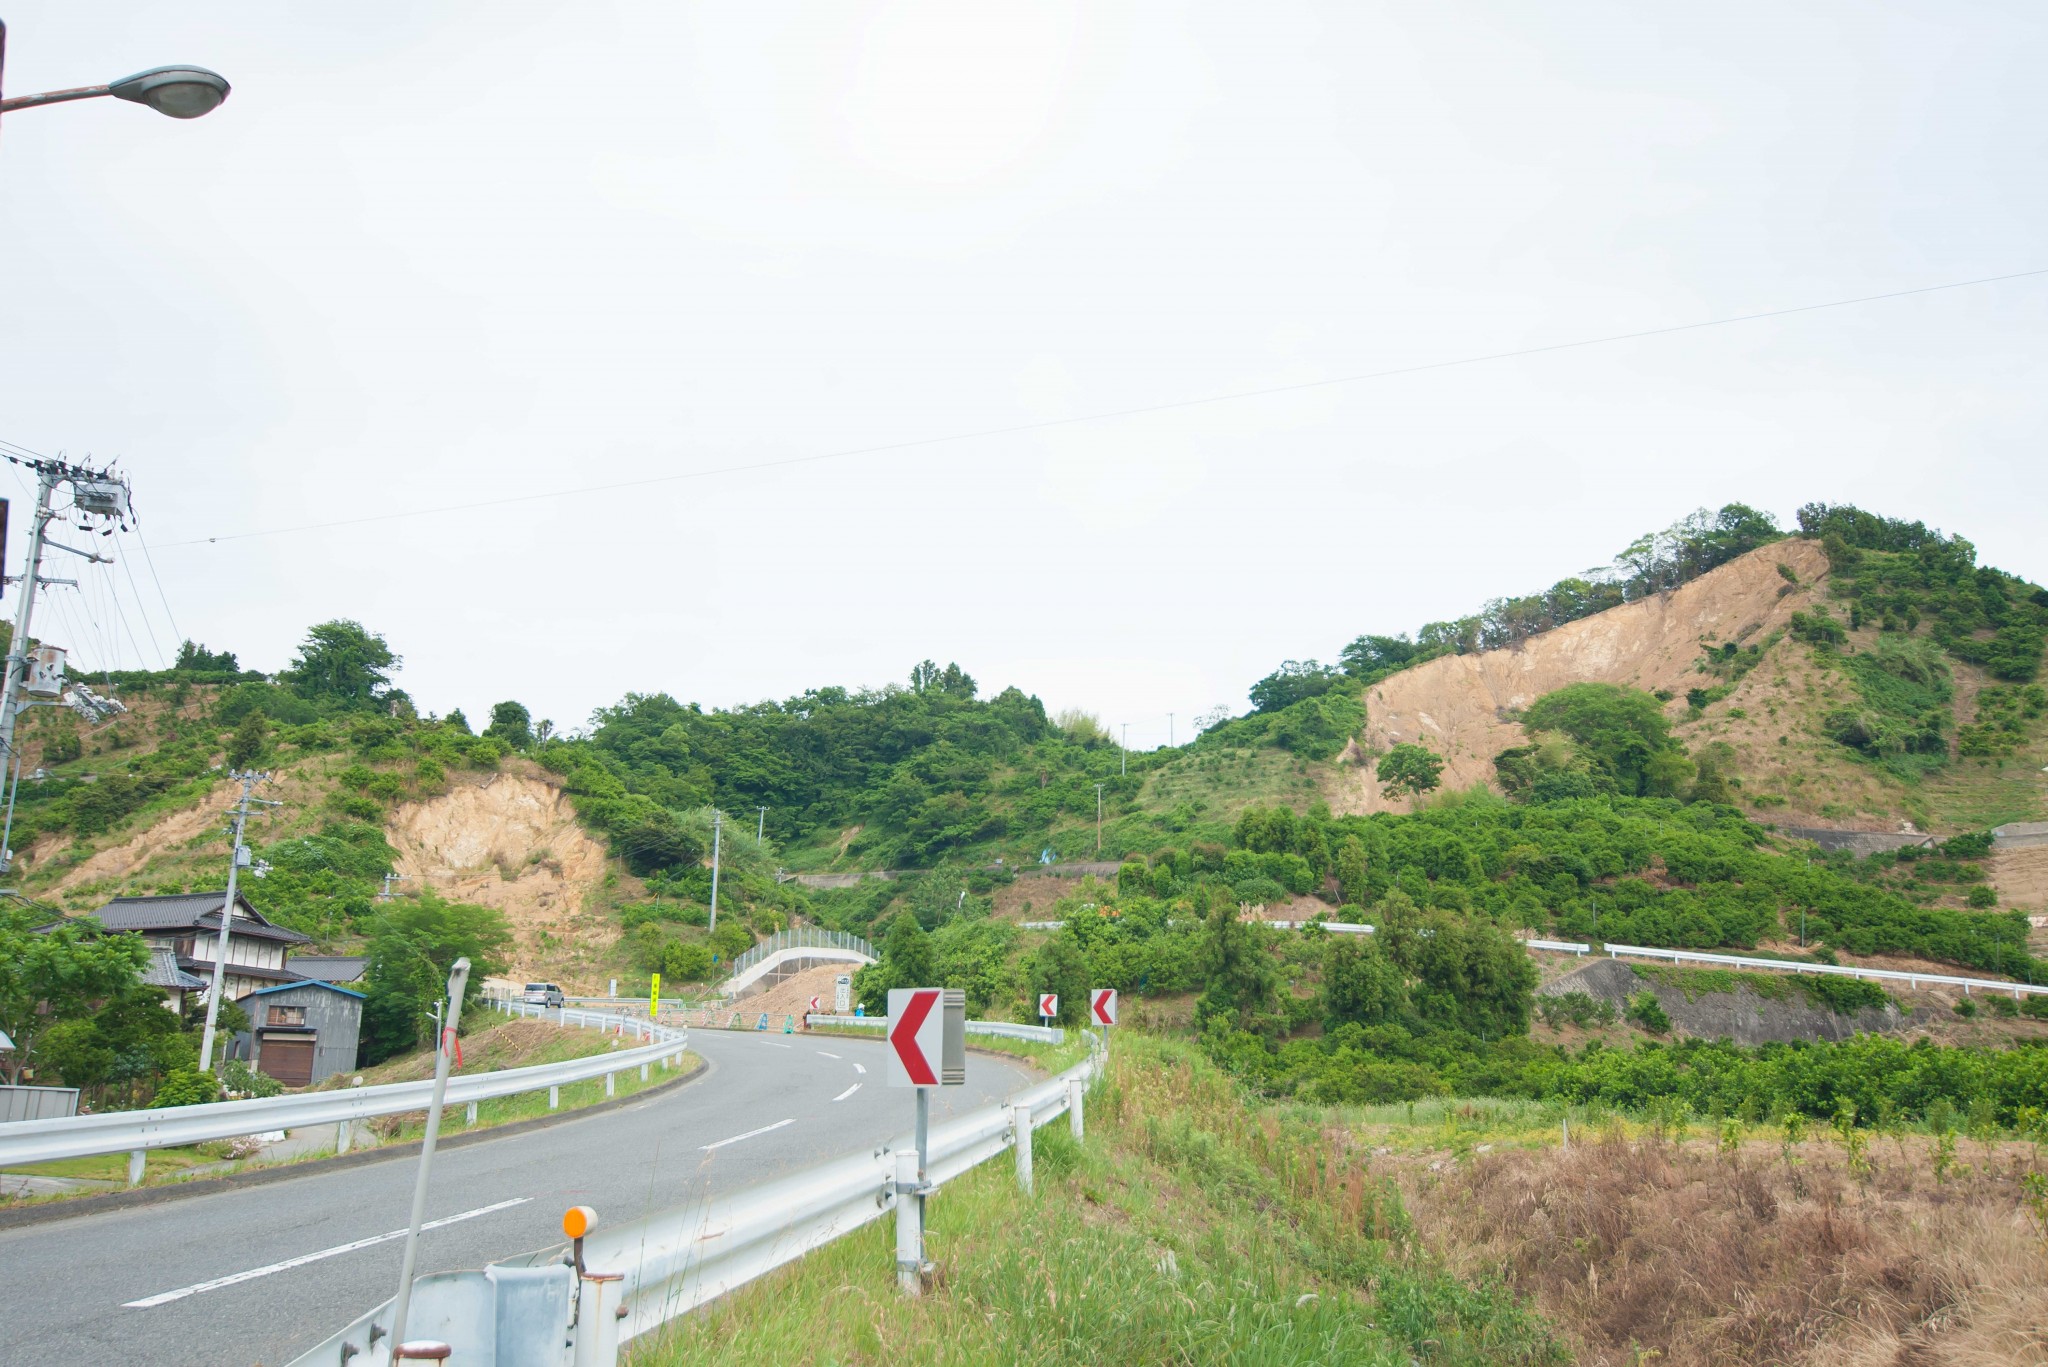 吉田町を車で走っていると、大きく崖が崩れた場所を目にすることも。地元の人は「崖崩れが起きた瞬間、雷が落ちたような轟音がした」と当時を振り返ります。